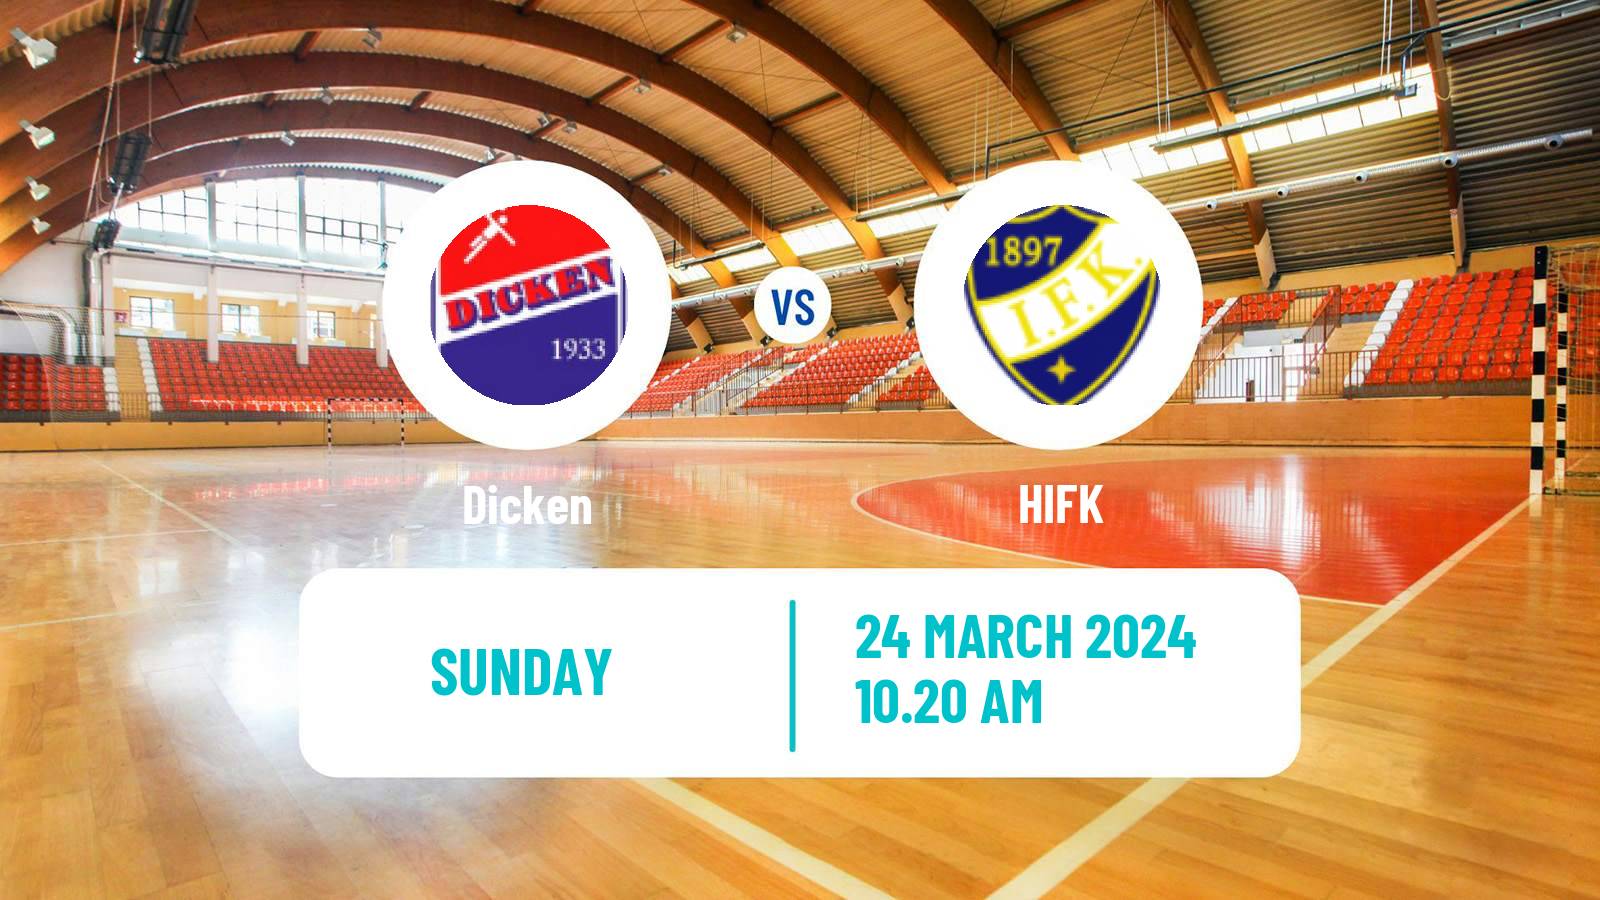 Handball Finnish SM-sarja Handball Dicken - HIFK